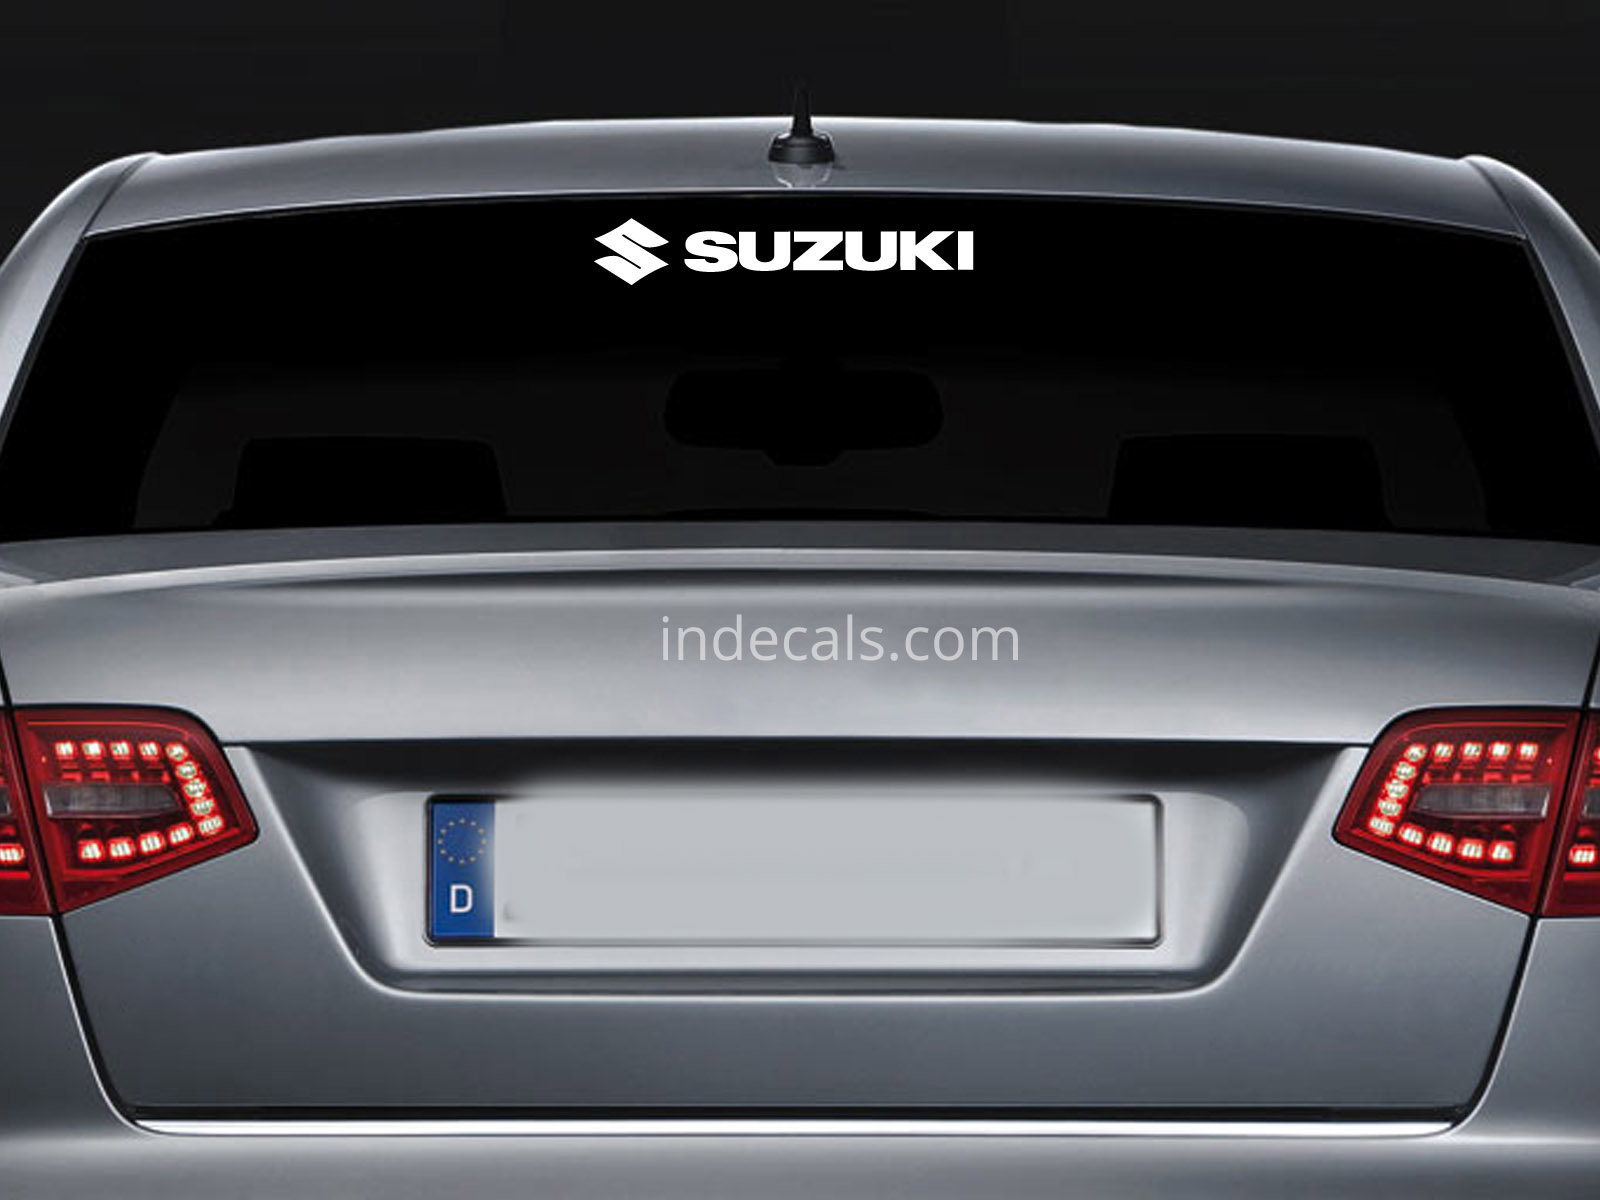 1 x Suzuki Sticker for Windshield or Back Window - White